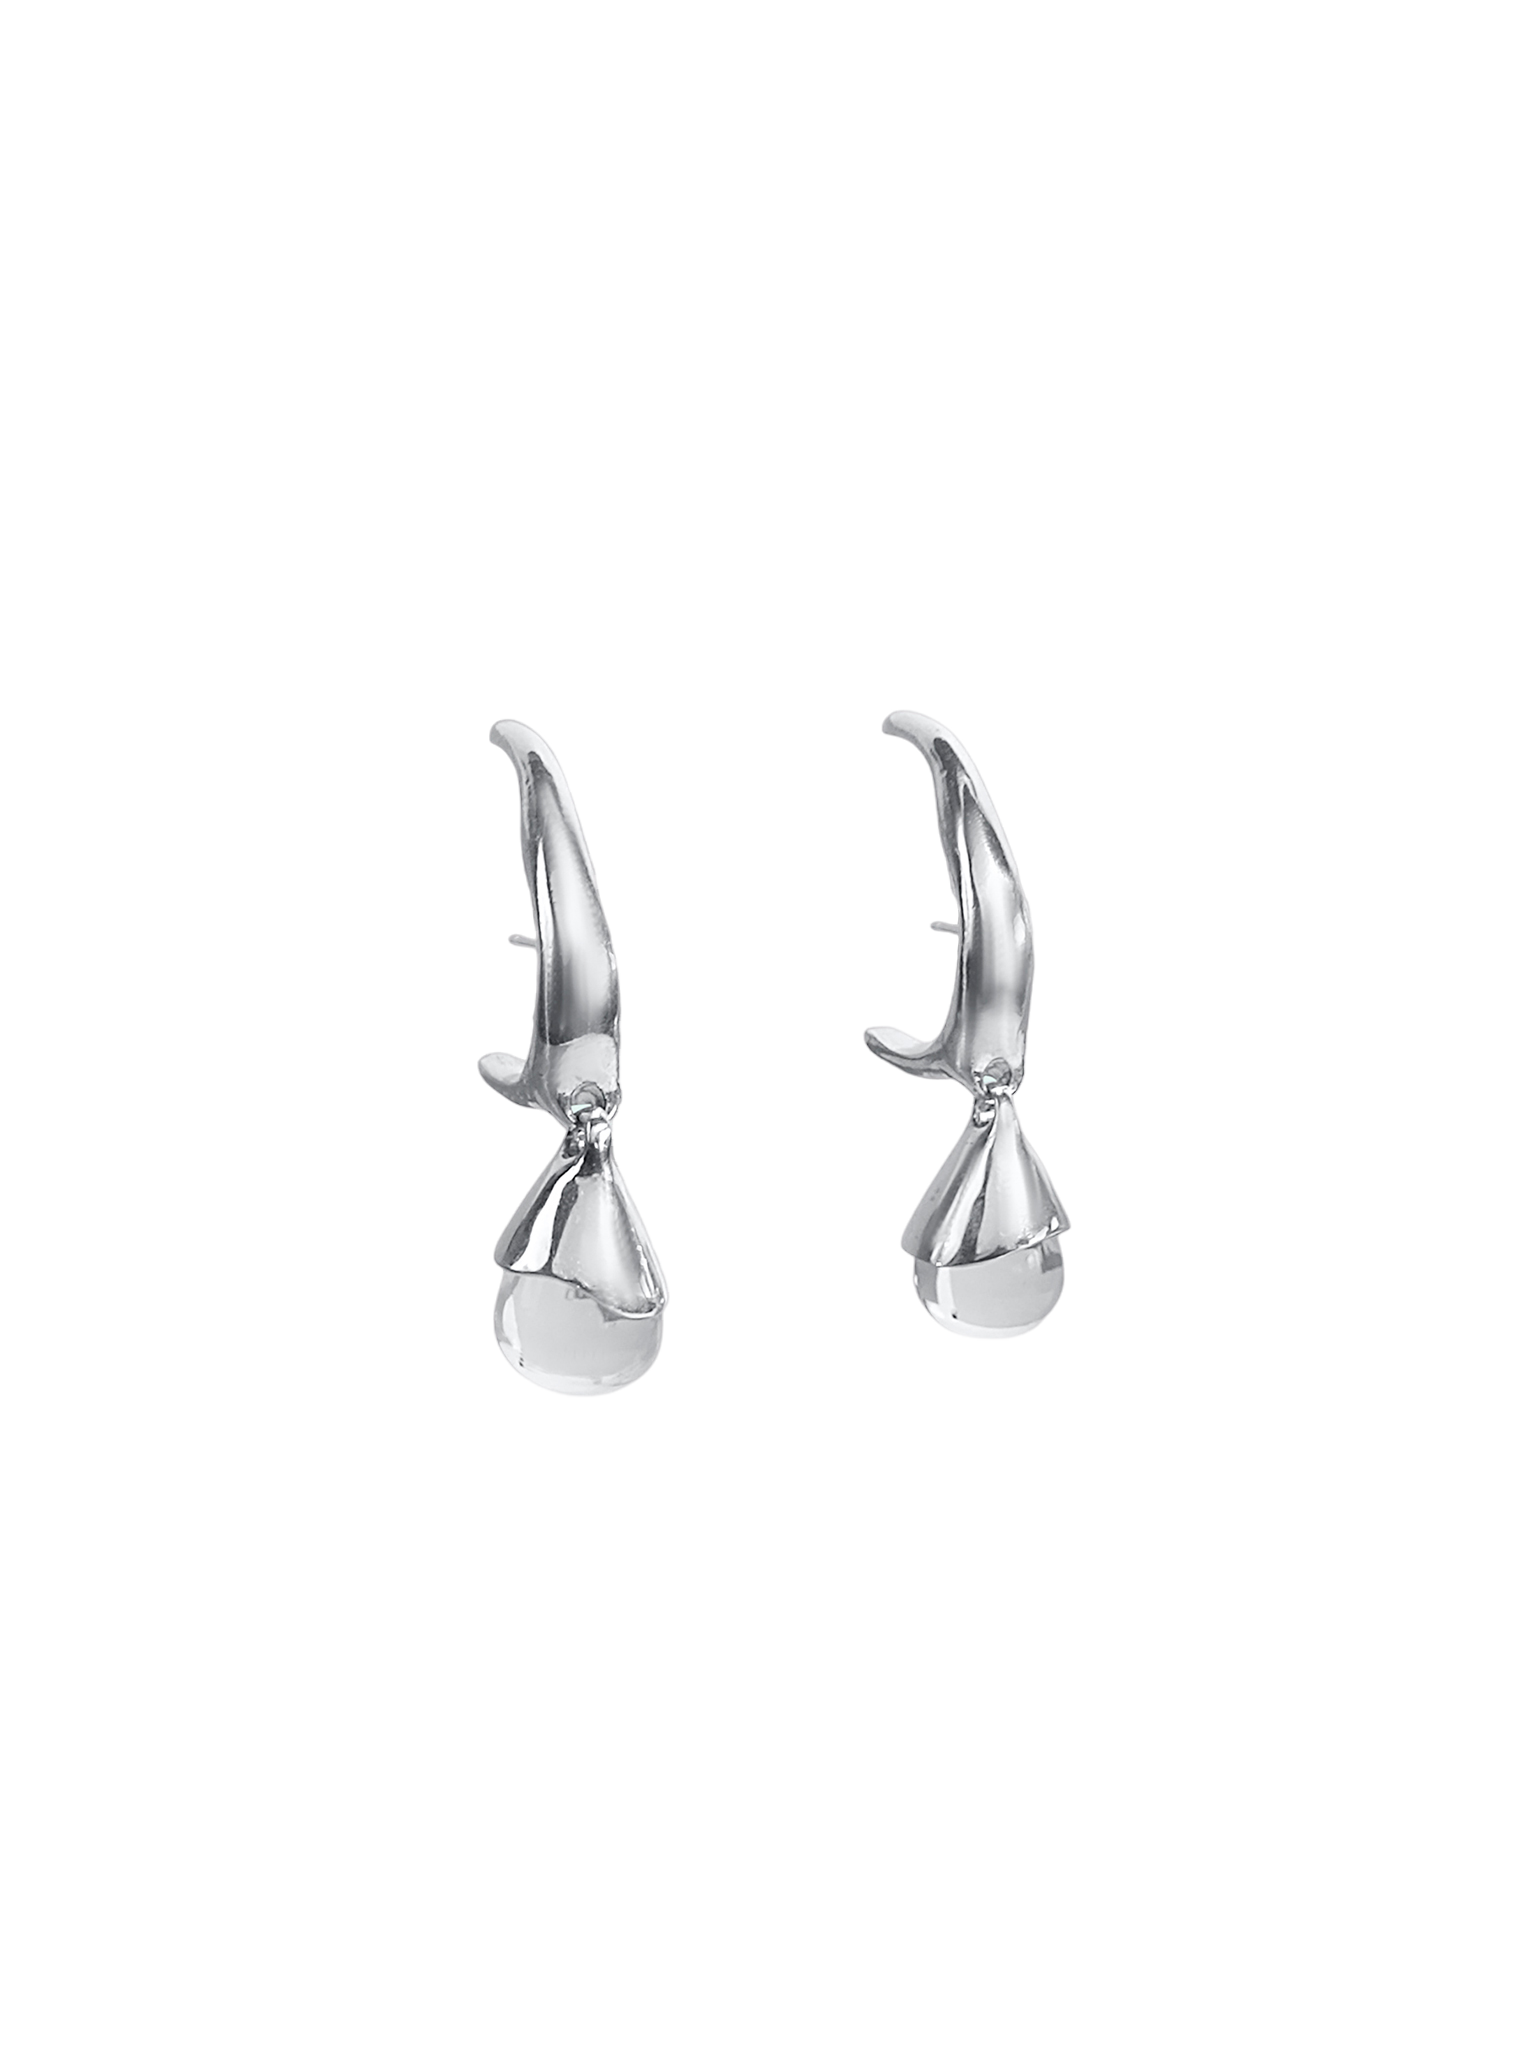 Hydra earrings 